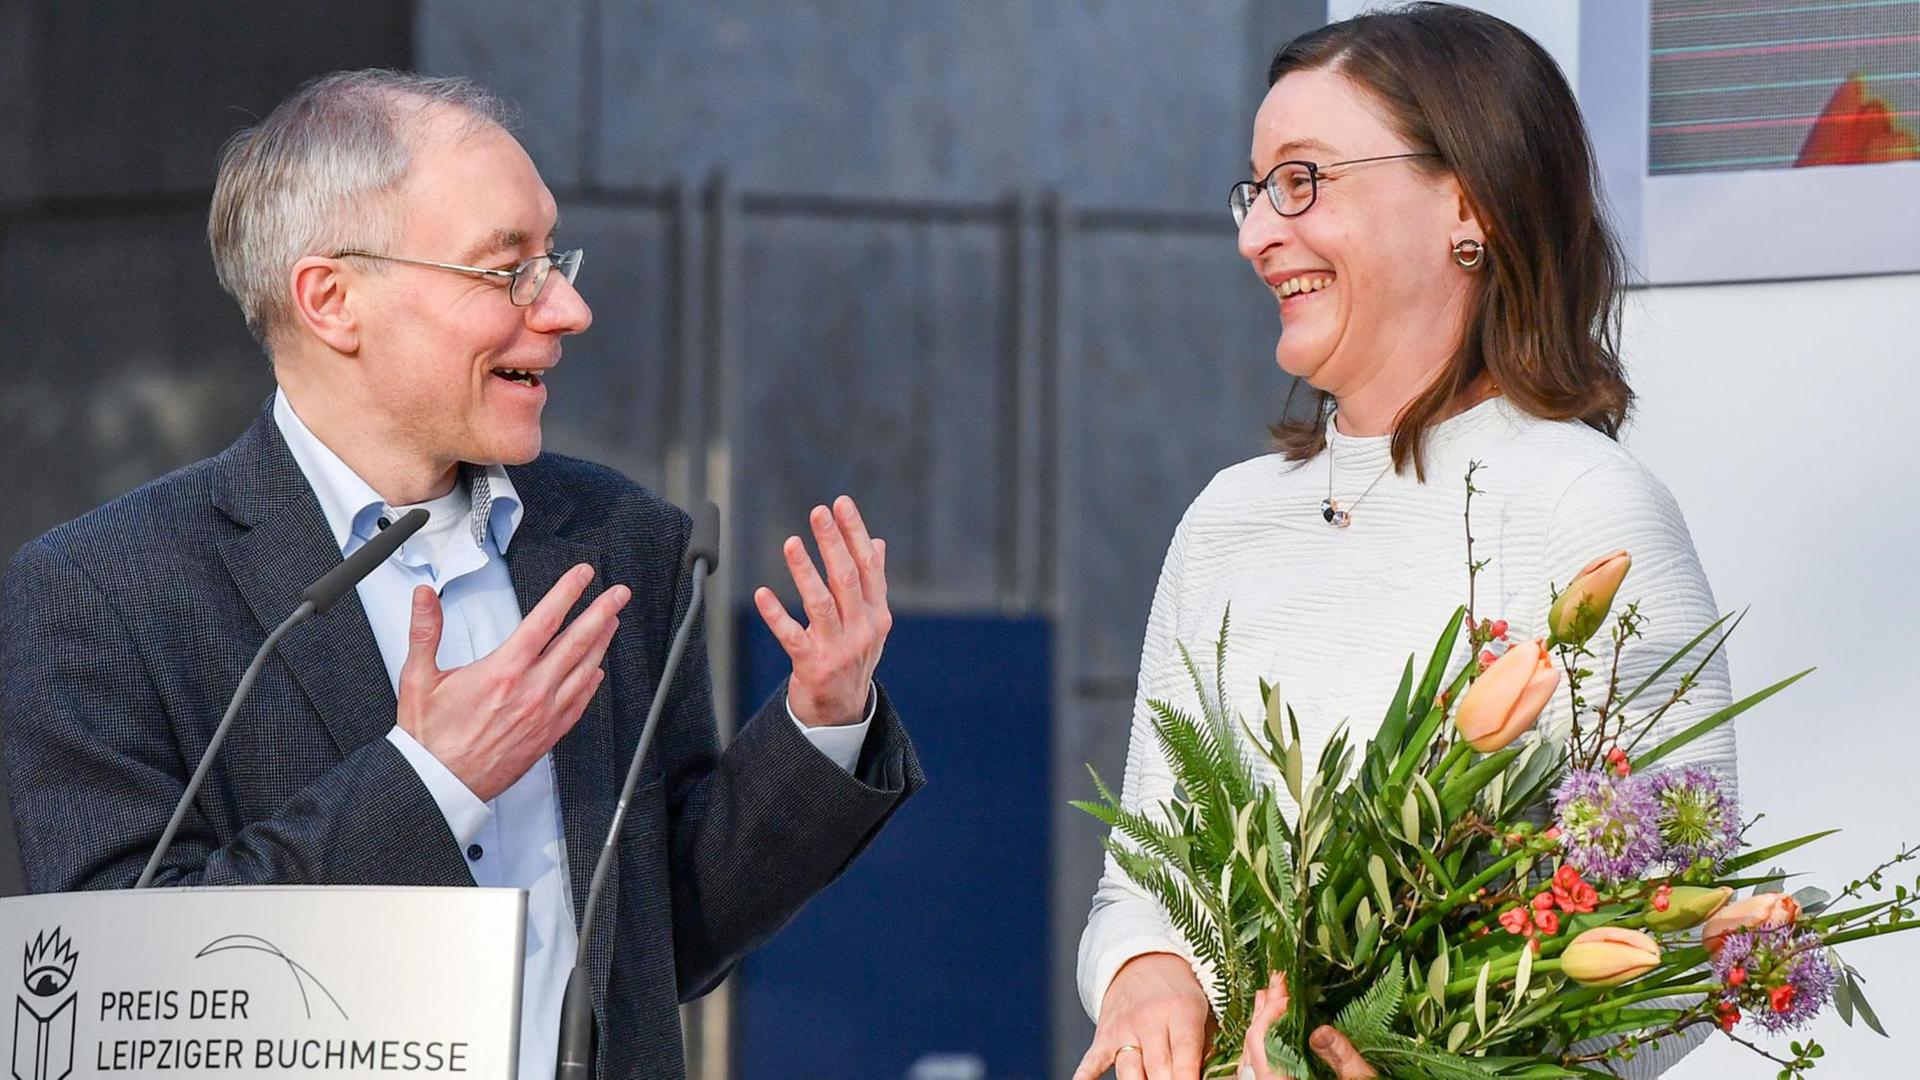 Der Übersetzer Juri Durkot und die Übersetzerin Sabine Stöhr werden auf der Buchmesse mit dem Preis der Leipziger Buchmesse in der Kategorie Übersetzung ausgezeichnet.